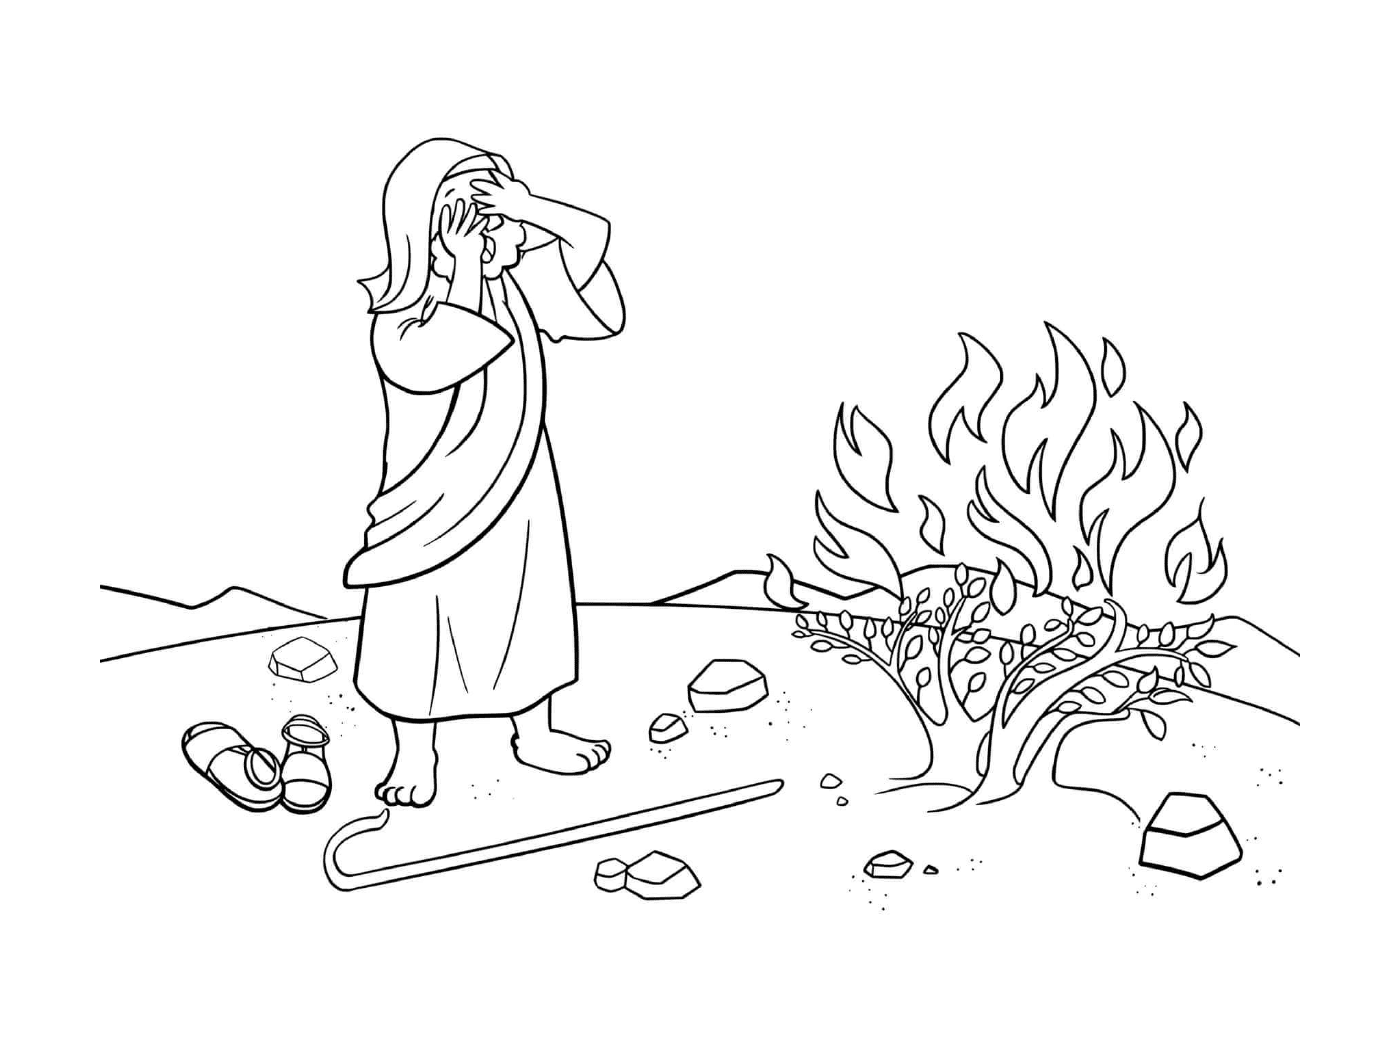   Buisson ardent, homme debout à côté d'un feu 